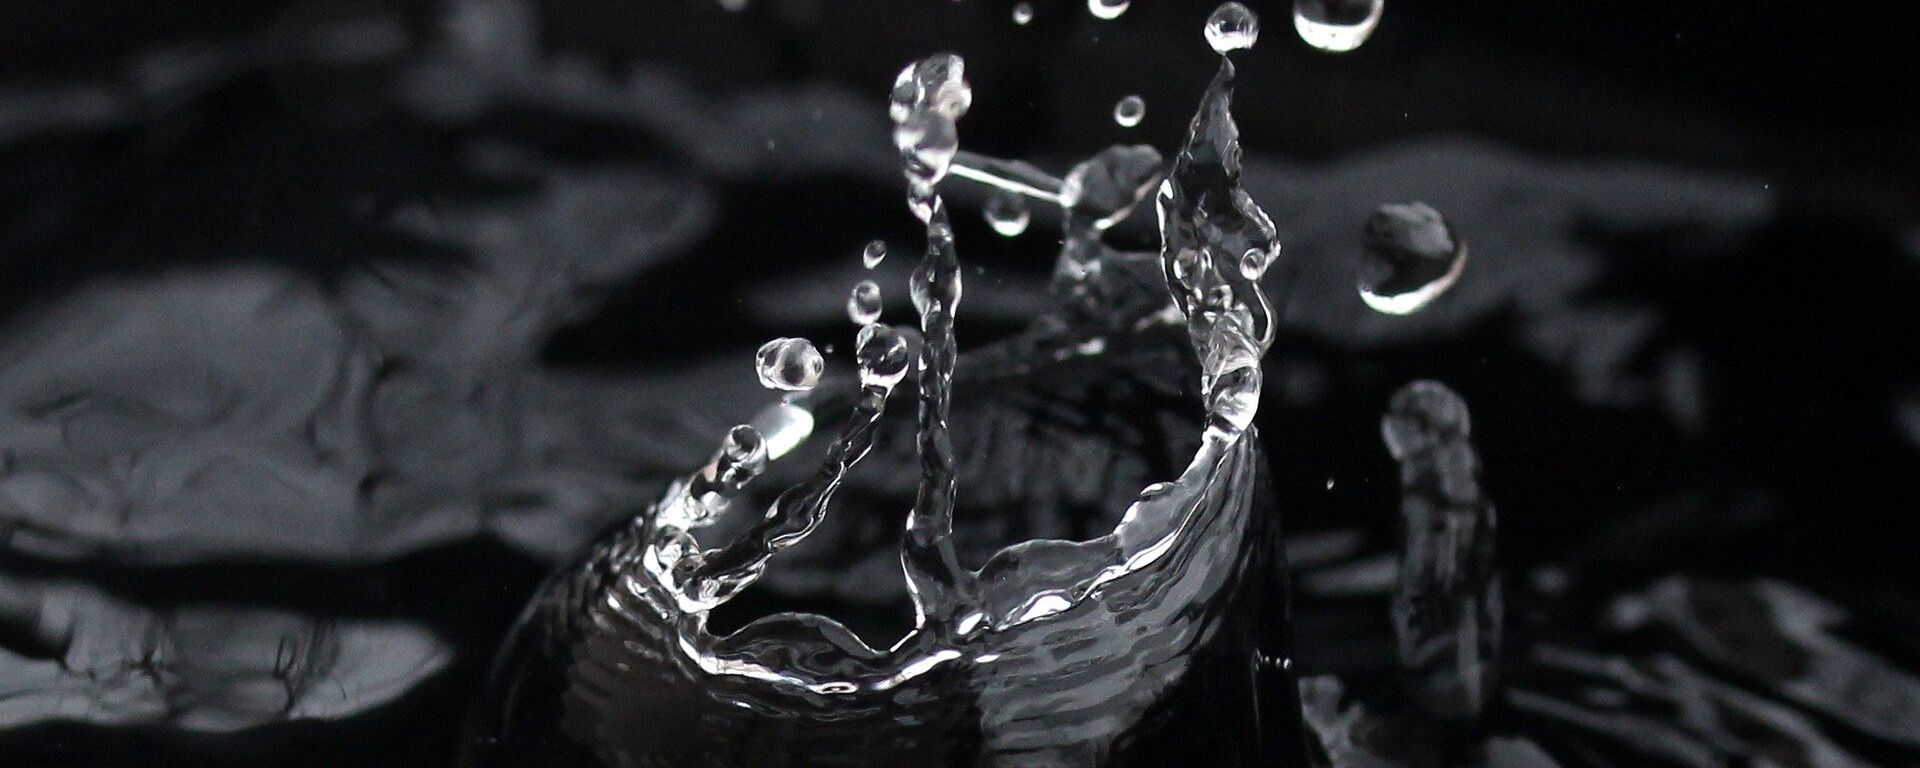 Agua potable, imagen referencial - Sputnik Mundo, 1920, 20.01.2020